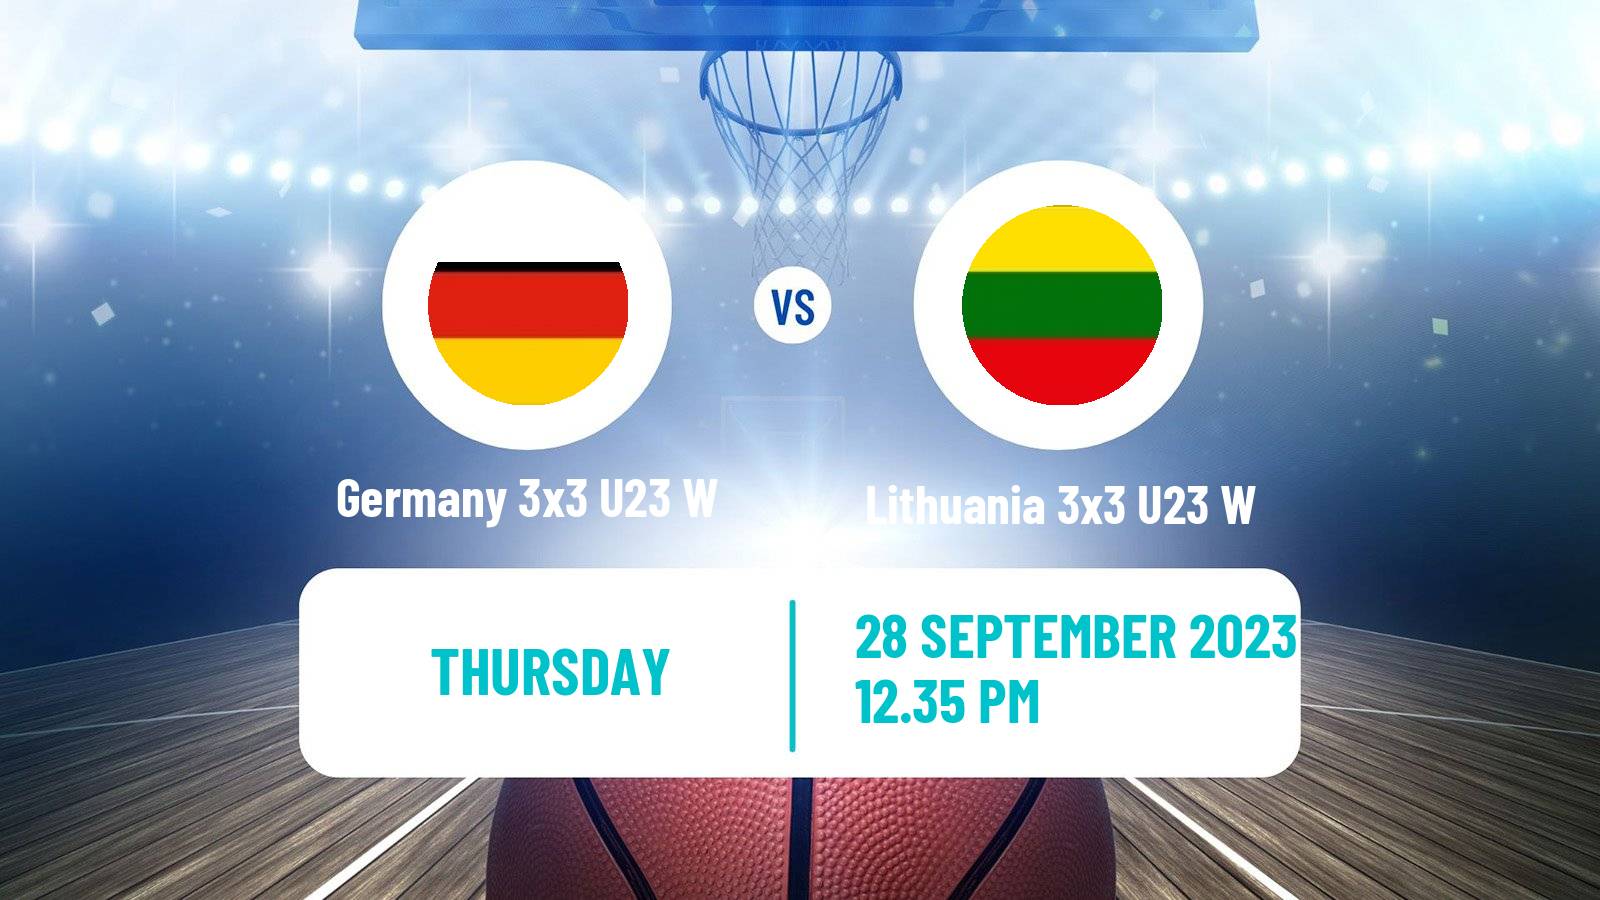 Basketball World Cup Basketball 3x3 U23 Women Germany 3x3 U23 W - Lithuania 3x3 U23 W